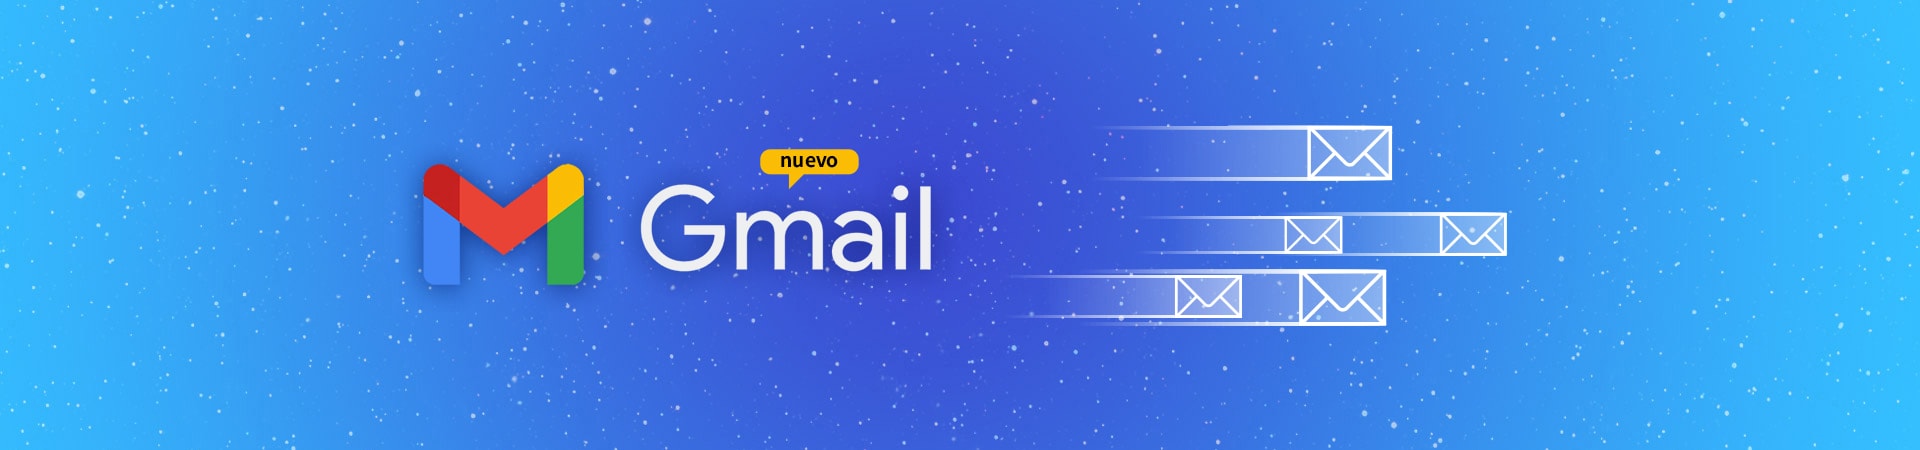 Como configurar un correo corporativo en Gmail